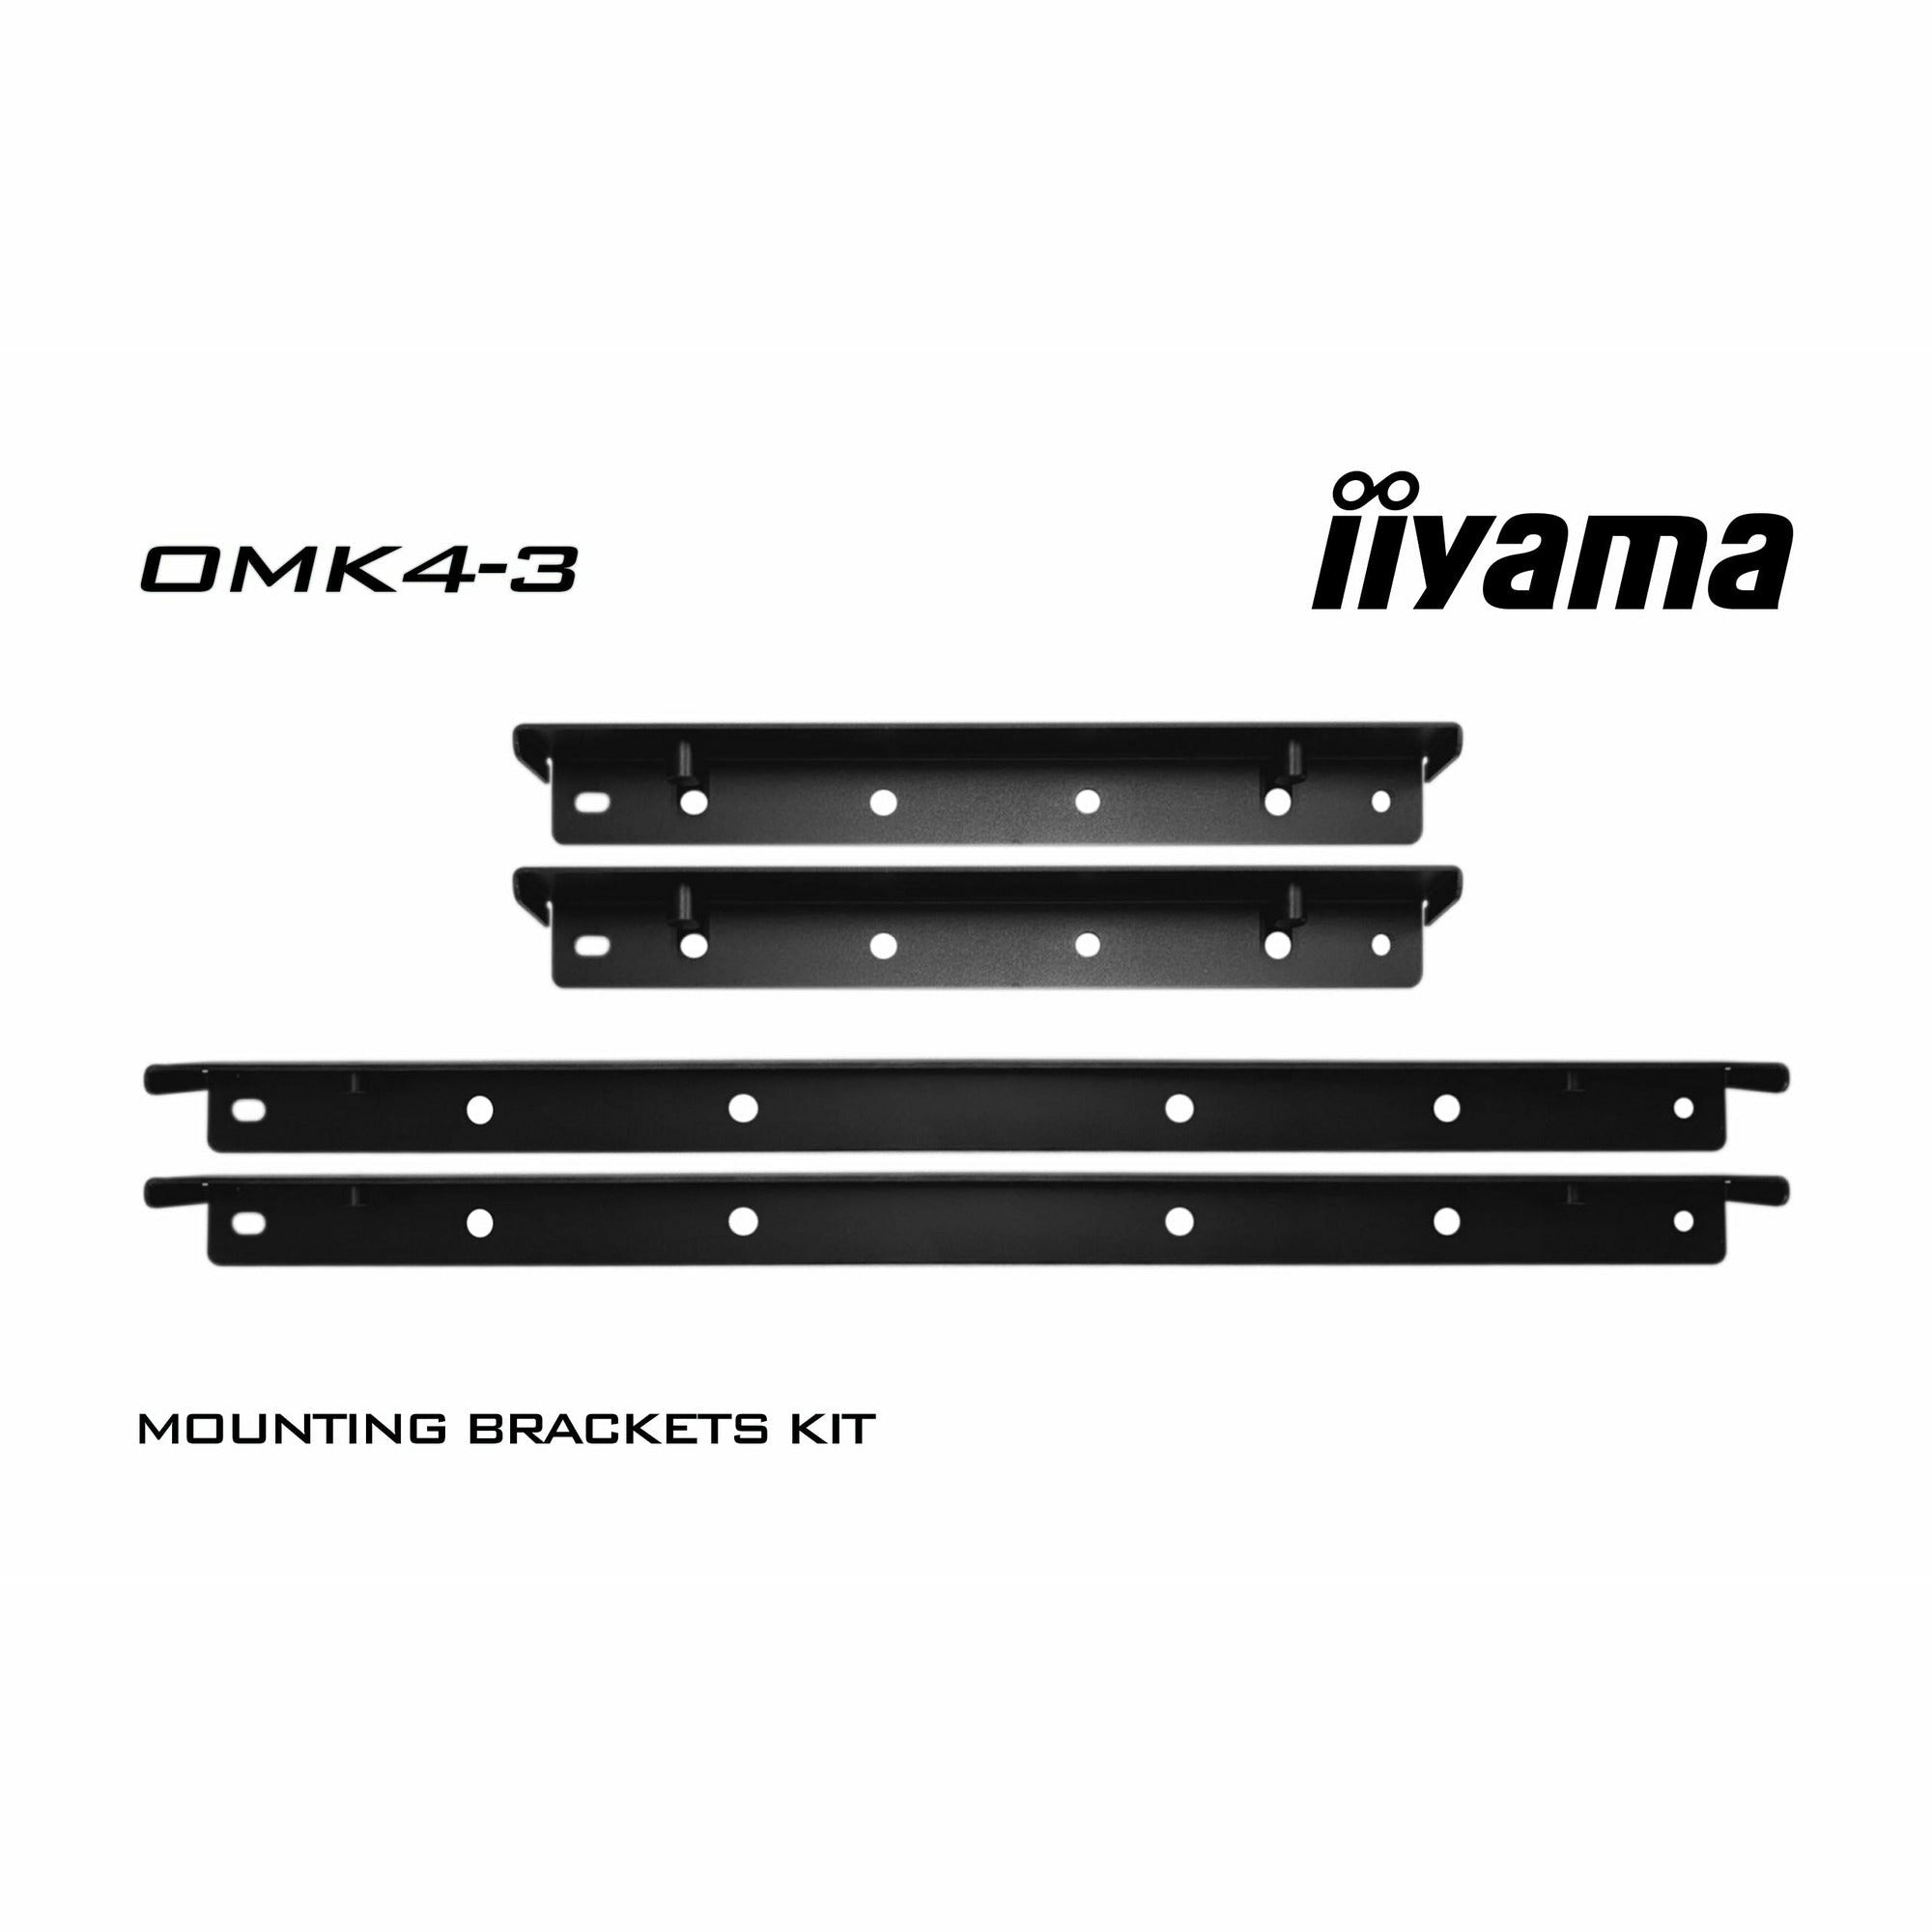 iiyama ProLite OMK4-3 Mounting Bracket Kit